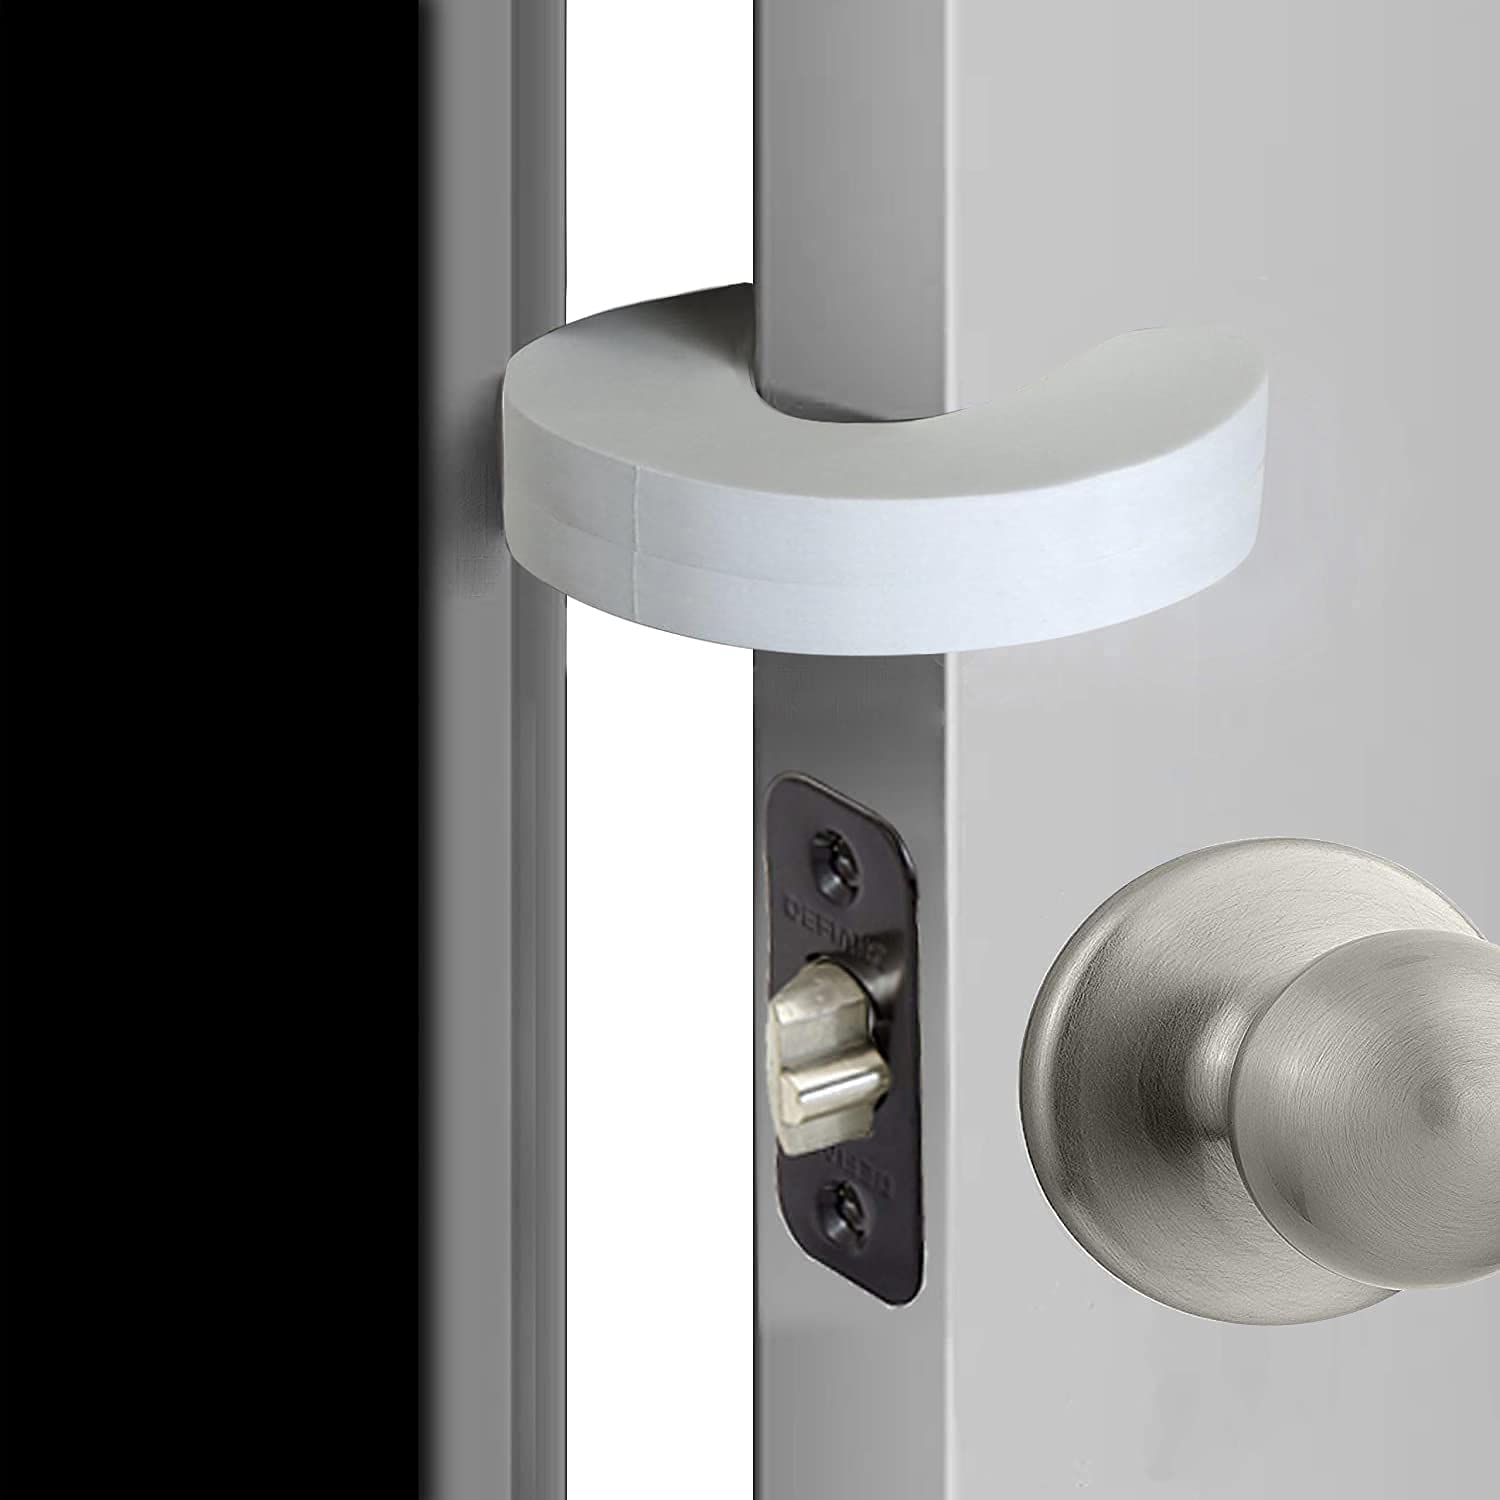 Child safety door handle lock Pet room door handle lock protection Baby  door handle lock Easy to install and use